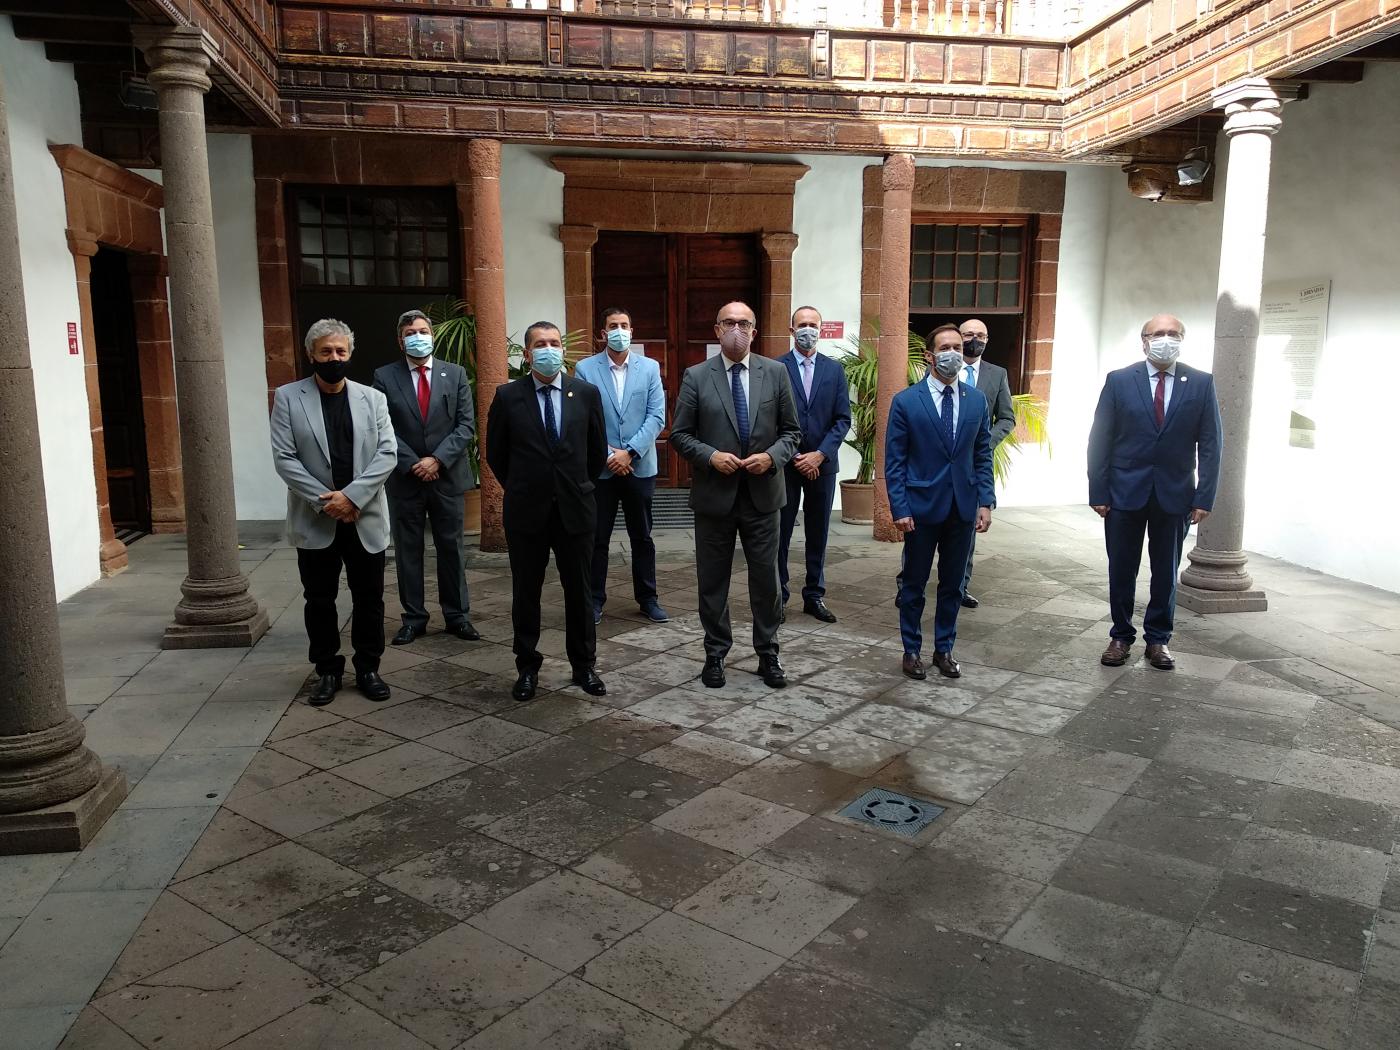 Algunas de las autoridades políticas y representantes del IAC que han acudido a la inauguración del Paseo de las Estrellas de la Ciencia de La Palma. Crédito: Aarón García Botín